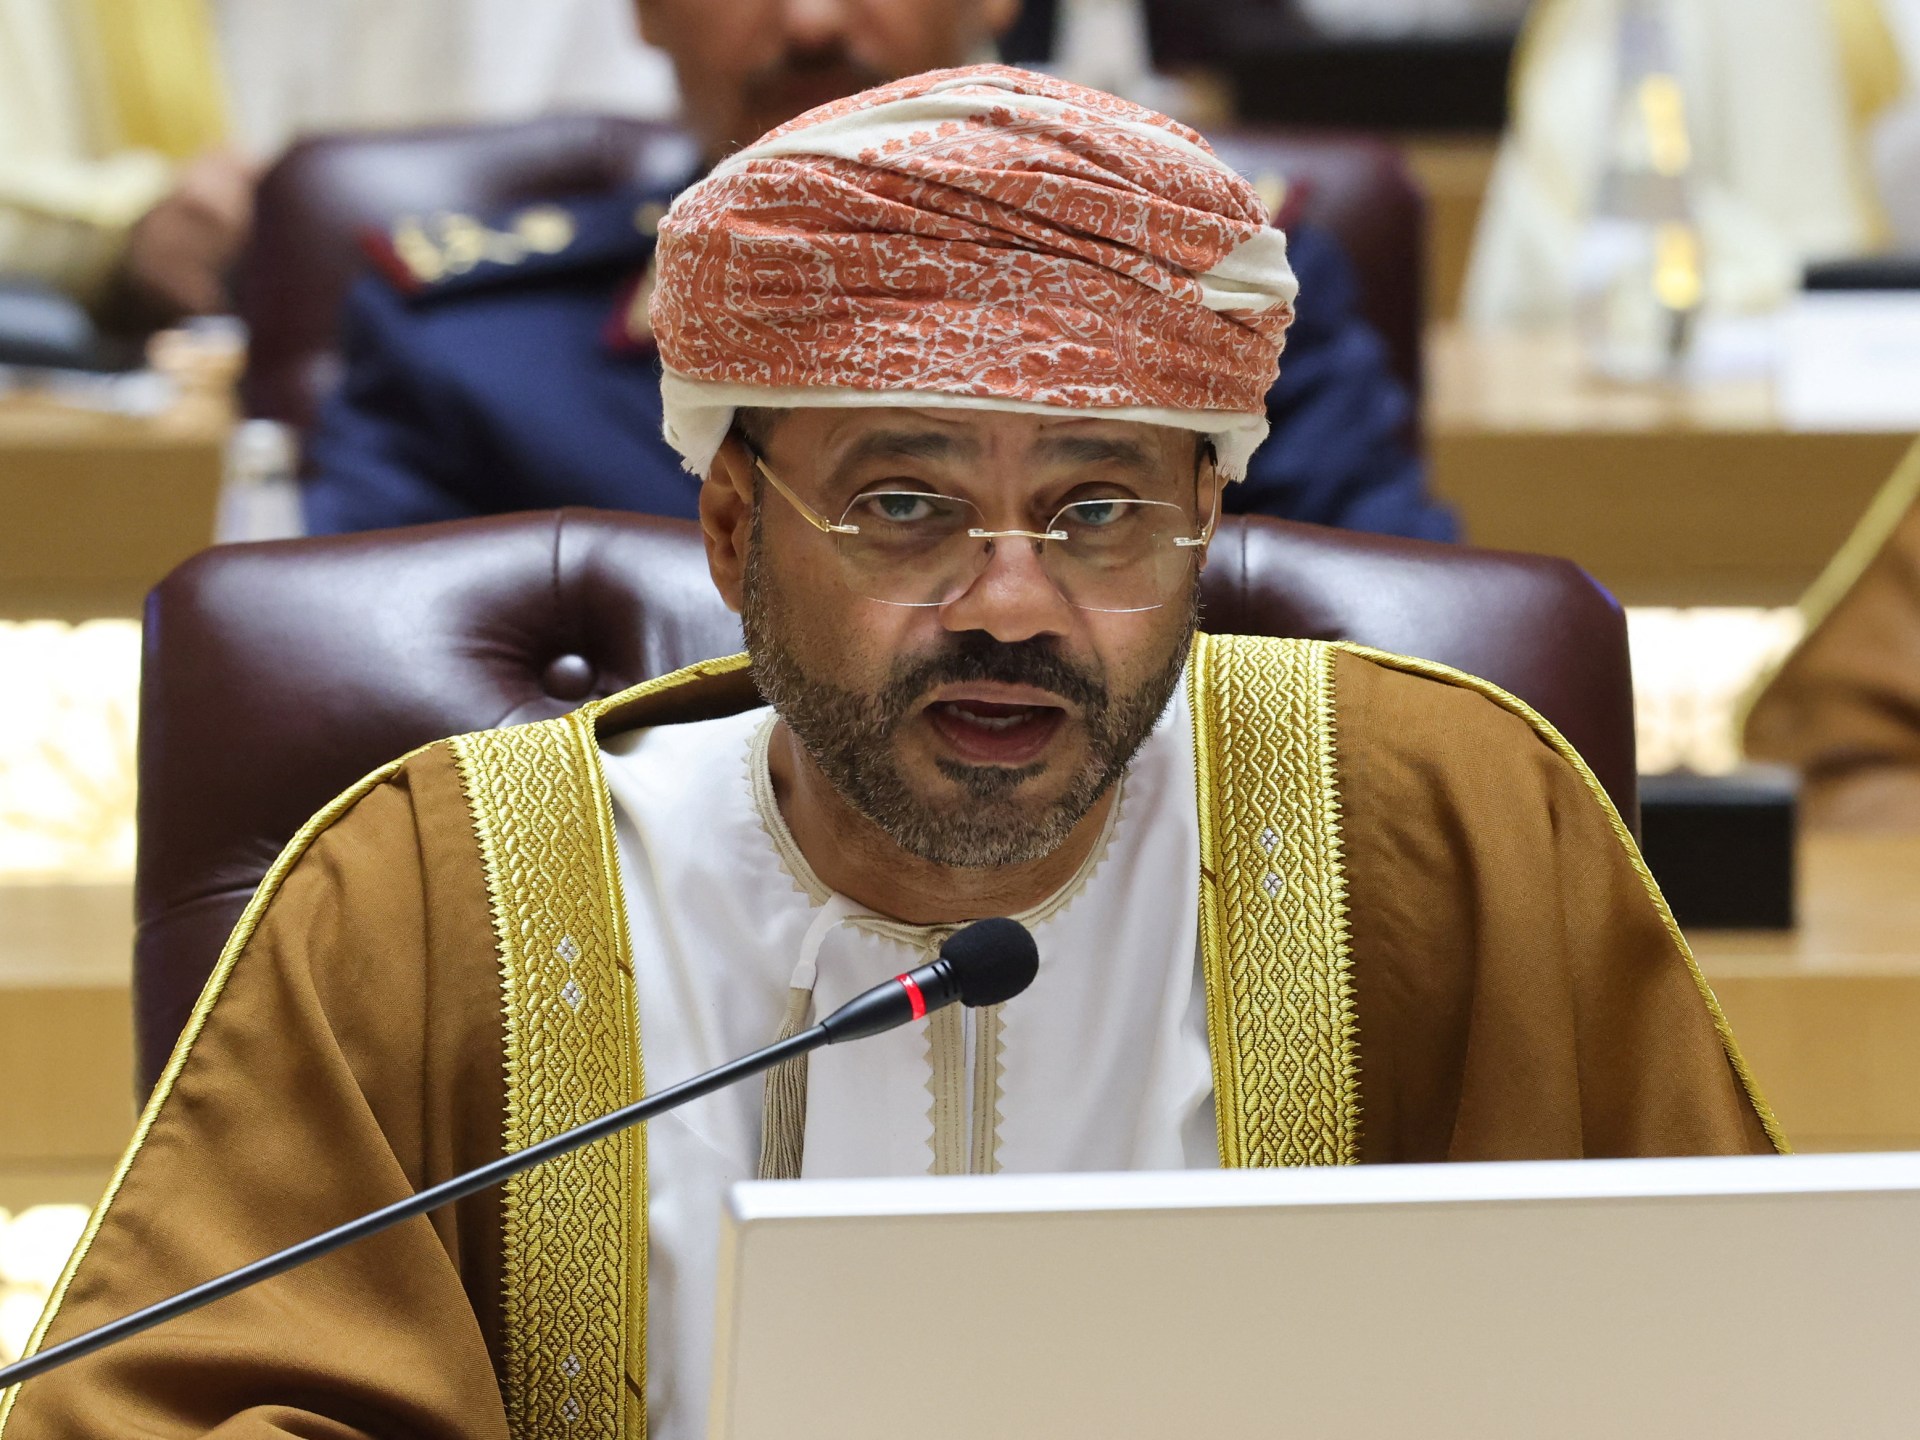 سلطنة عمان تطالب بمحكمة دولية لجرائم إسرائيل في غزة | أخبار – البوكس نيوز